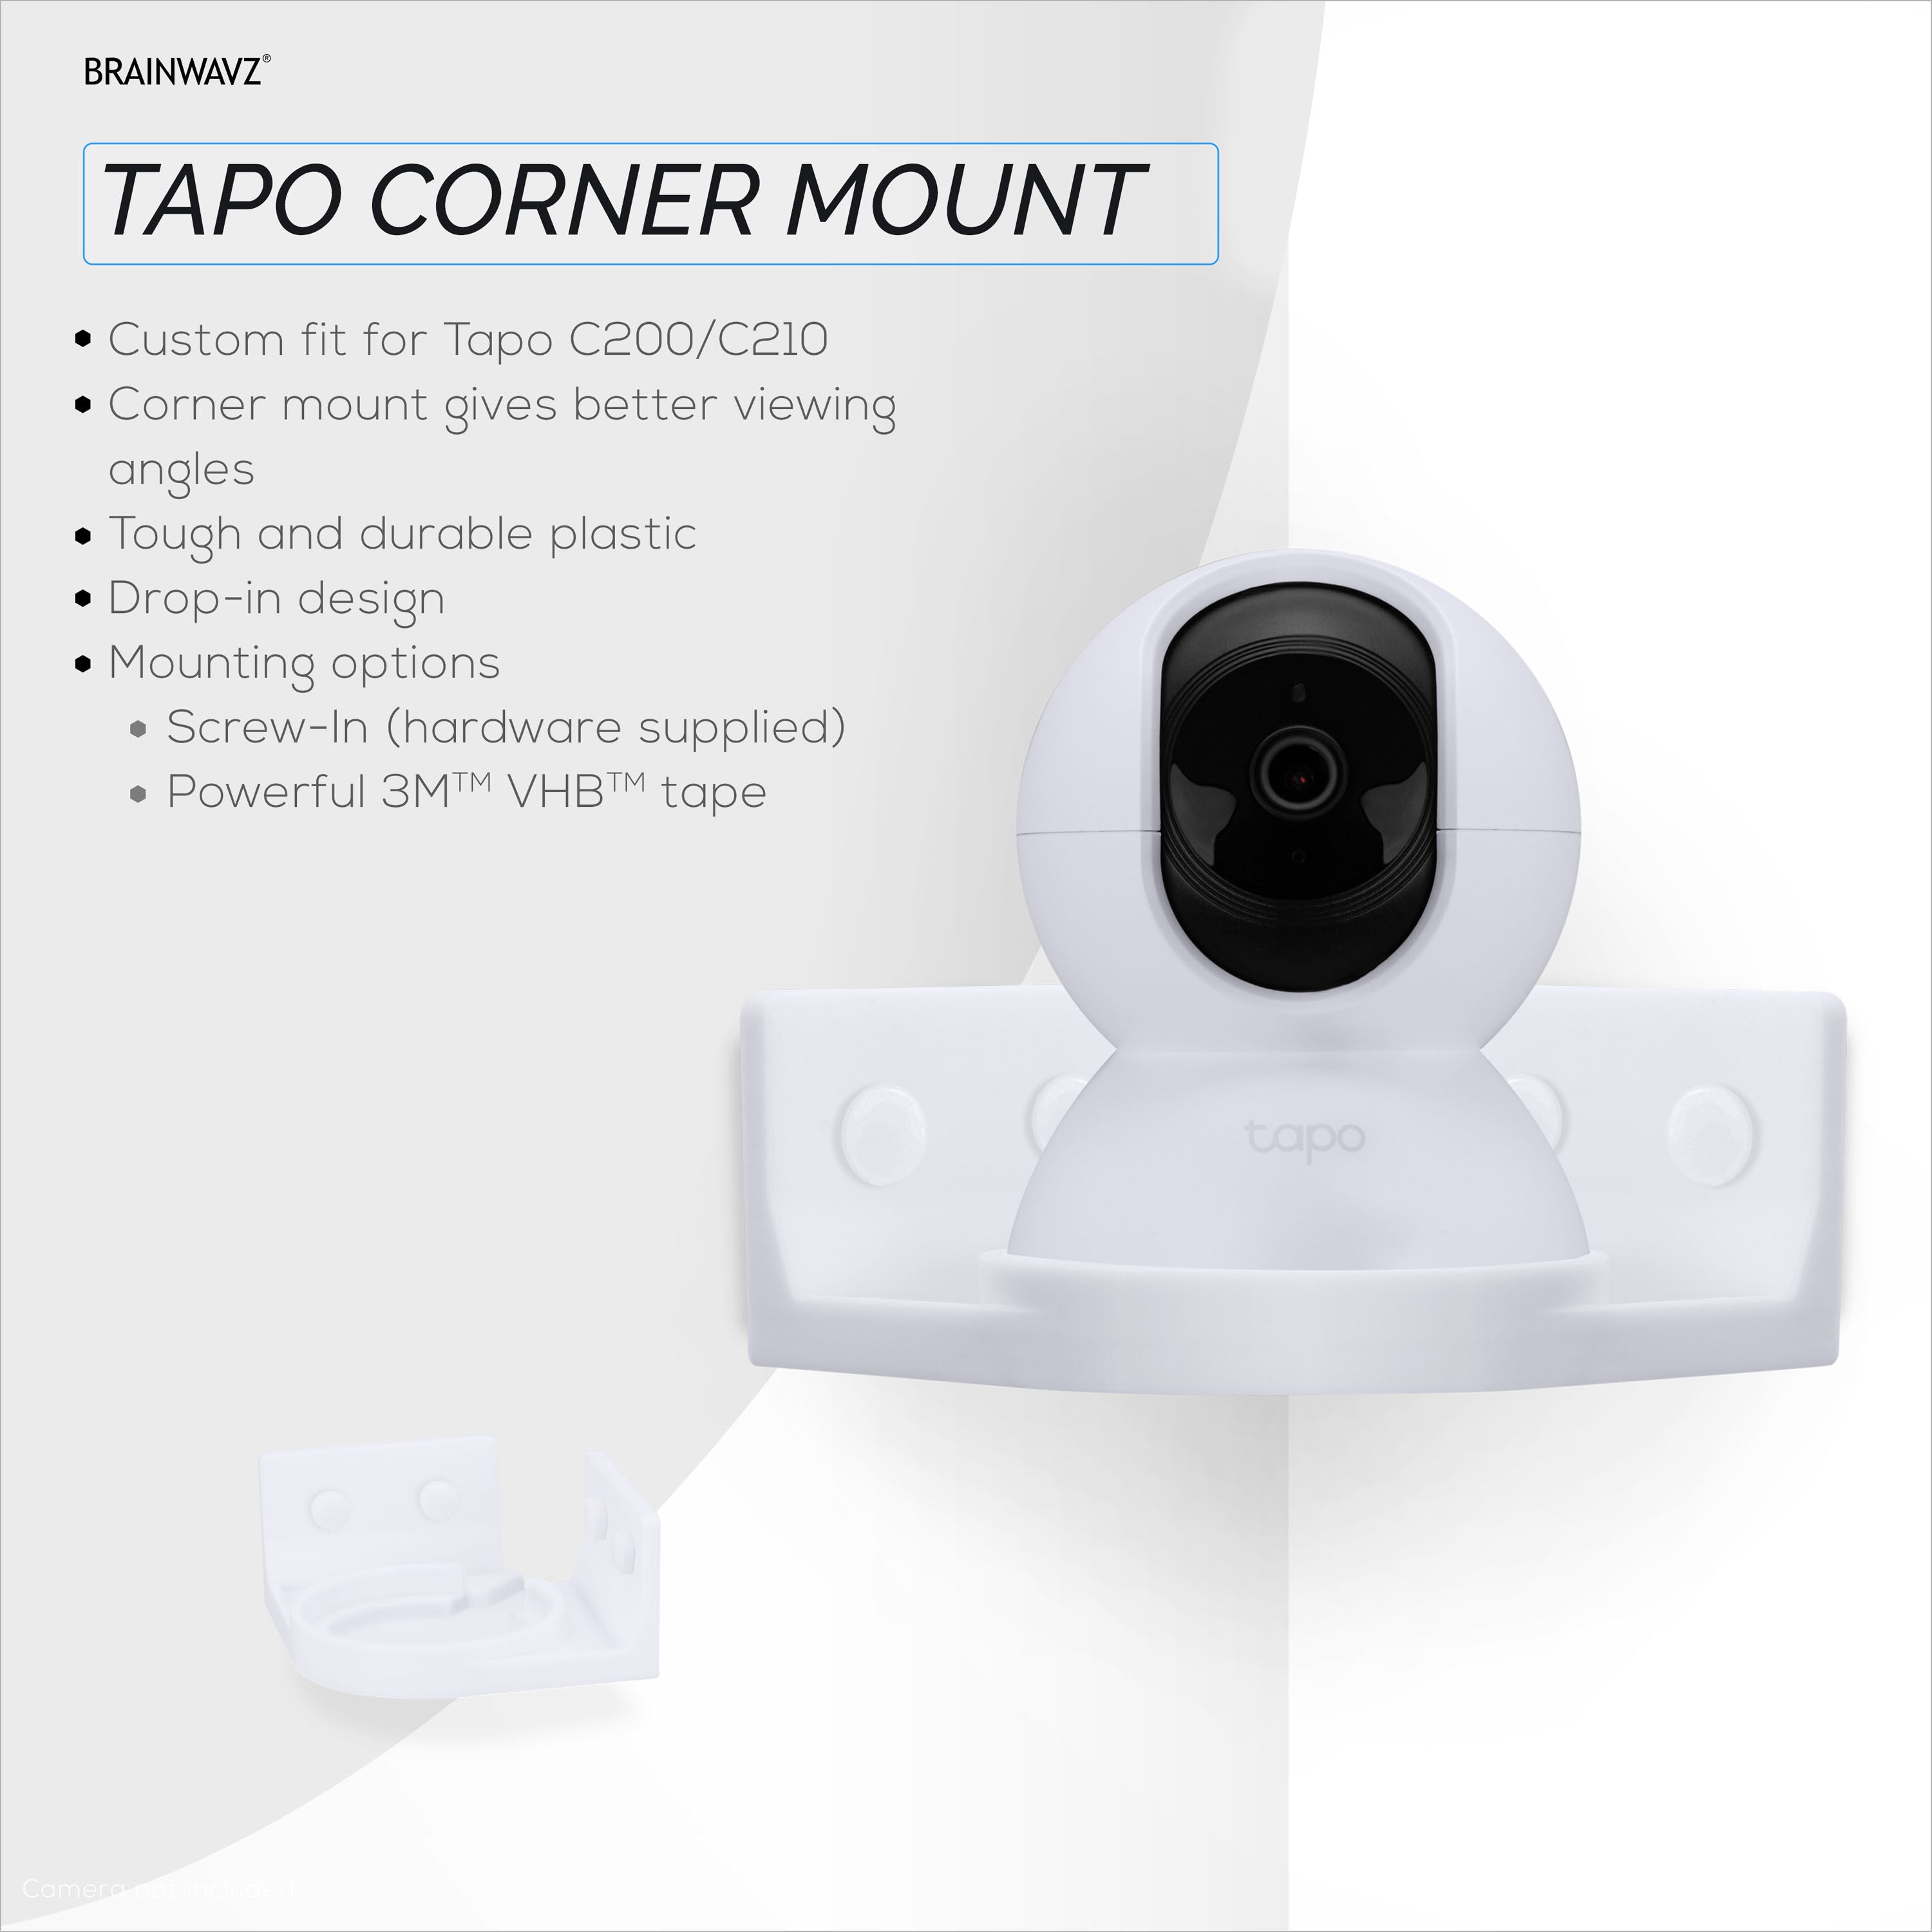 Tapo台座マウント 2枚セット c210 c200 壁取り付け用 見守りカメラ-